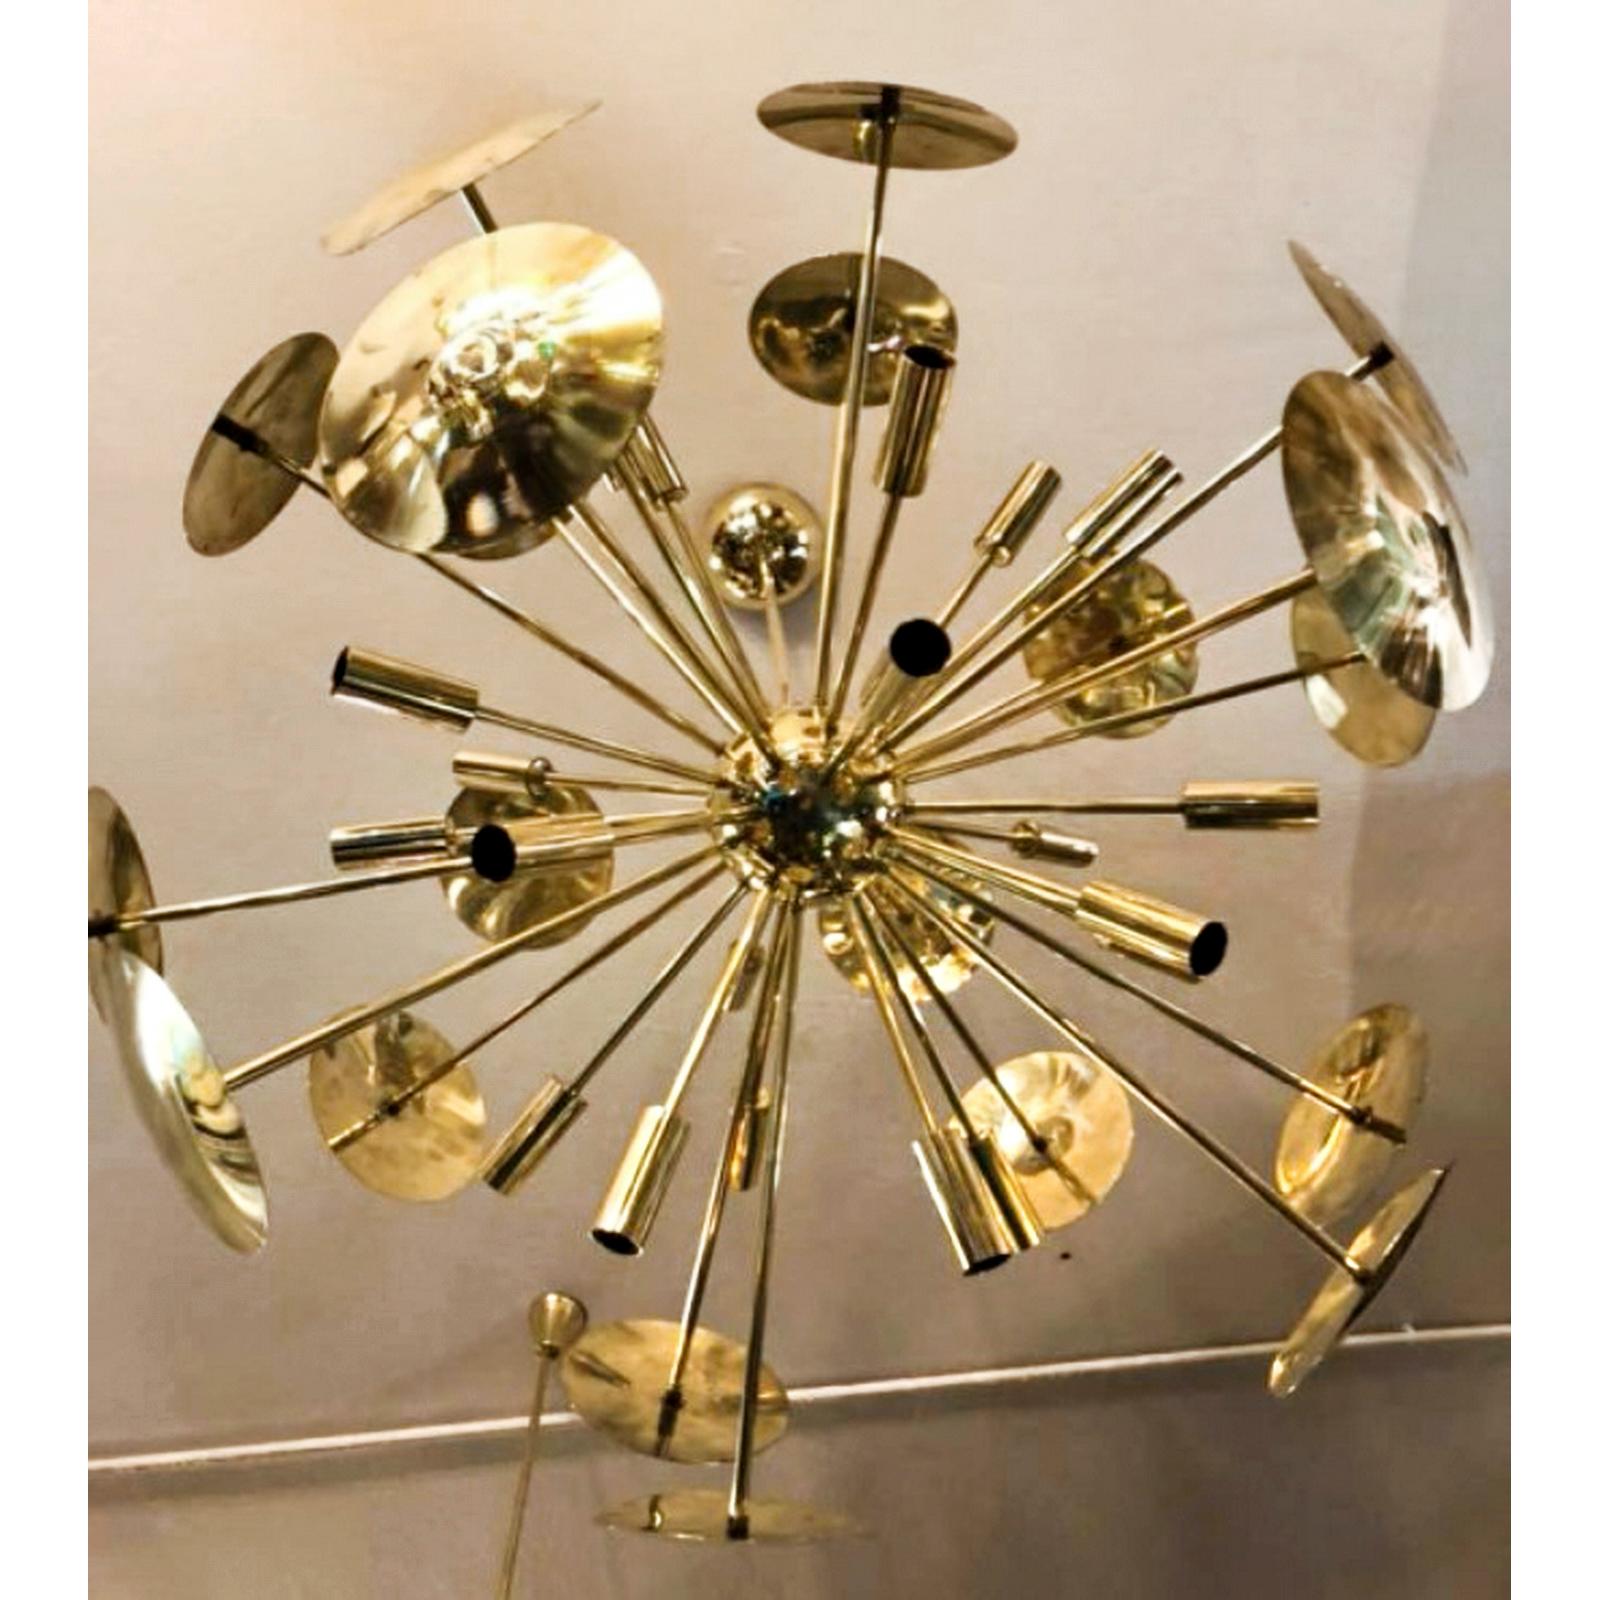 Fireworks Brass Italian Chandelier Sputnik 16 Lights, 32 arms
Lustre disque en laiton de style Sputnik du milieu du siècle.

Magnifique lustre Sputnik italien en laiton, entièrement réalisé, avec 16 lumières. Le reflet de la lumière dans les disques